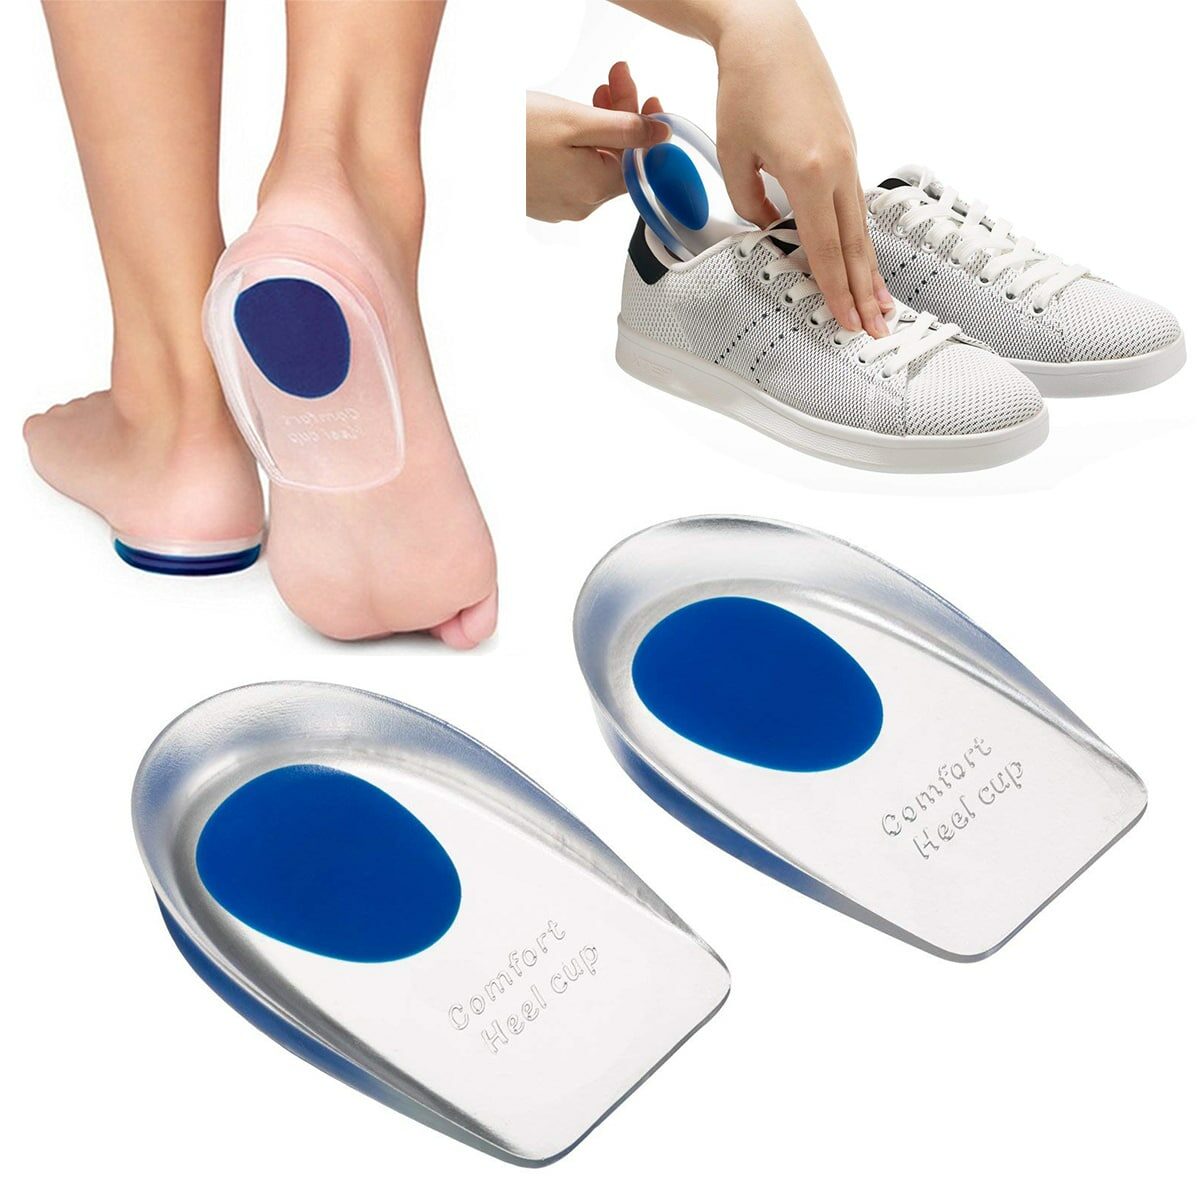 Blaue und transparente Fersenkappe auf weißen und blauen Schuhen